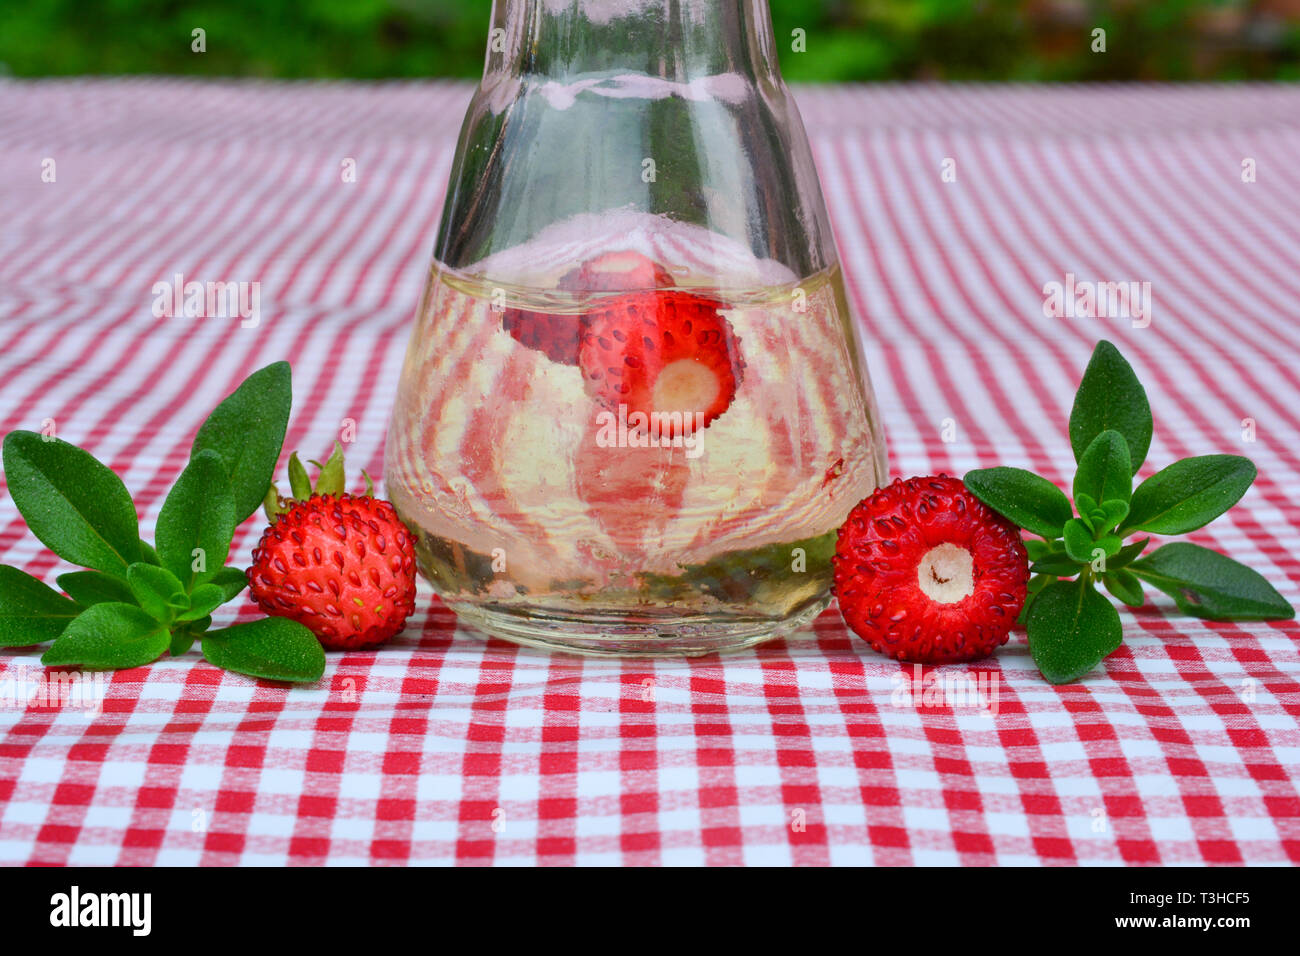 Home acquavite aromatizzata con fresche fragole selvatiche e timo selvatico in un bicchiere piccolo su rosso e bianco tovaglia, vista ravvicinata Foto Stock